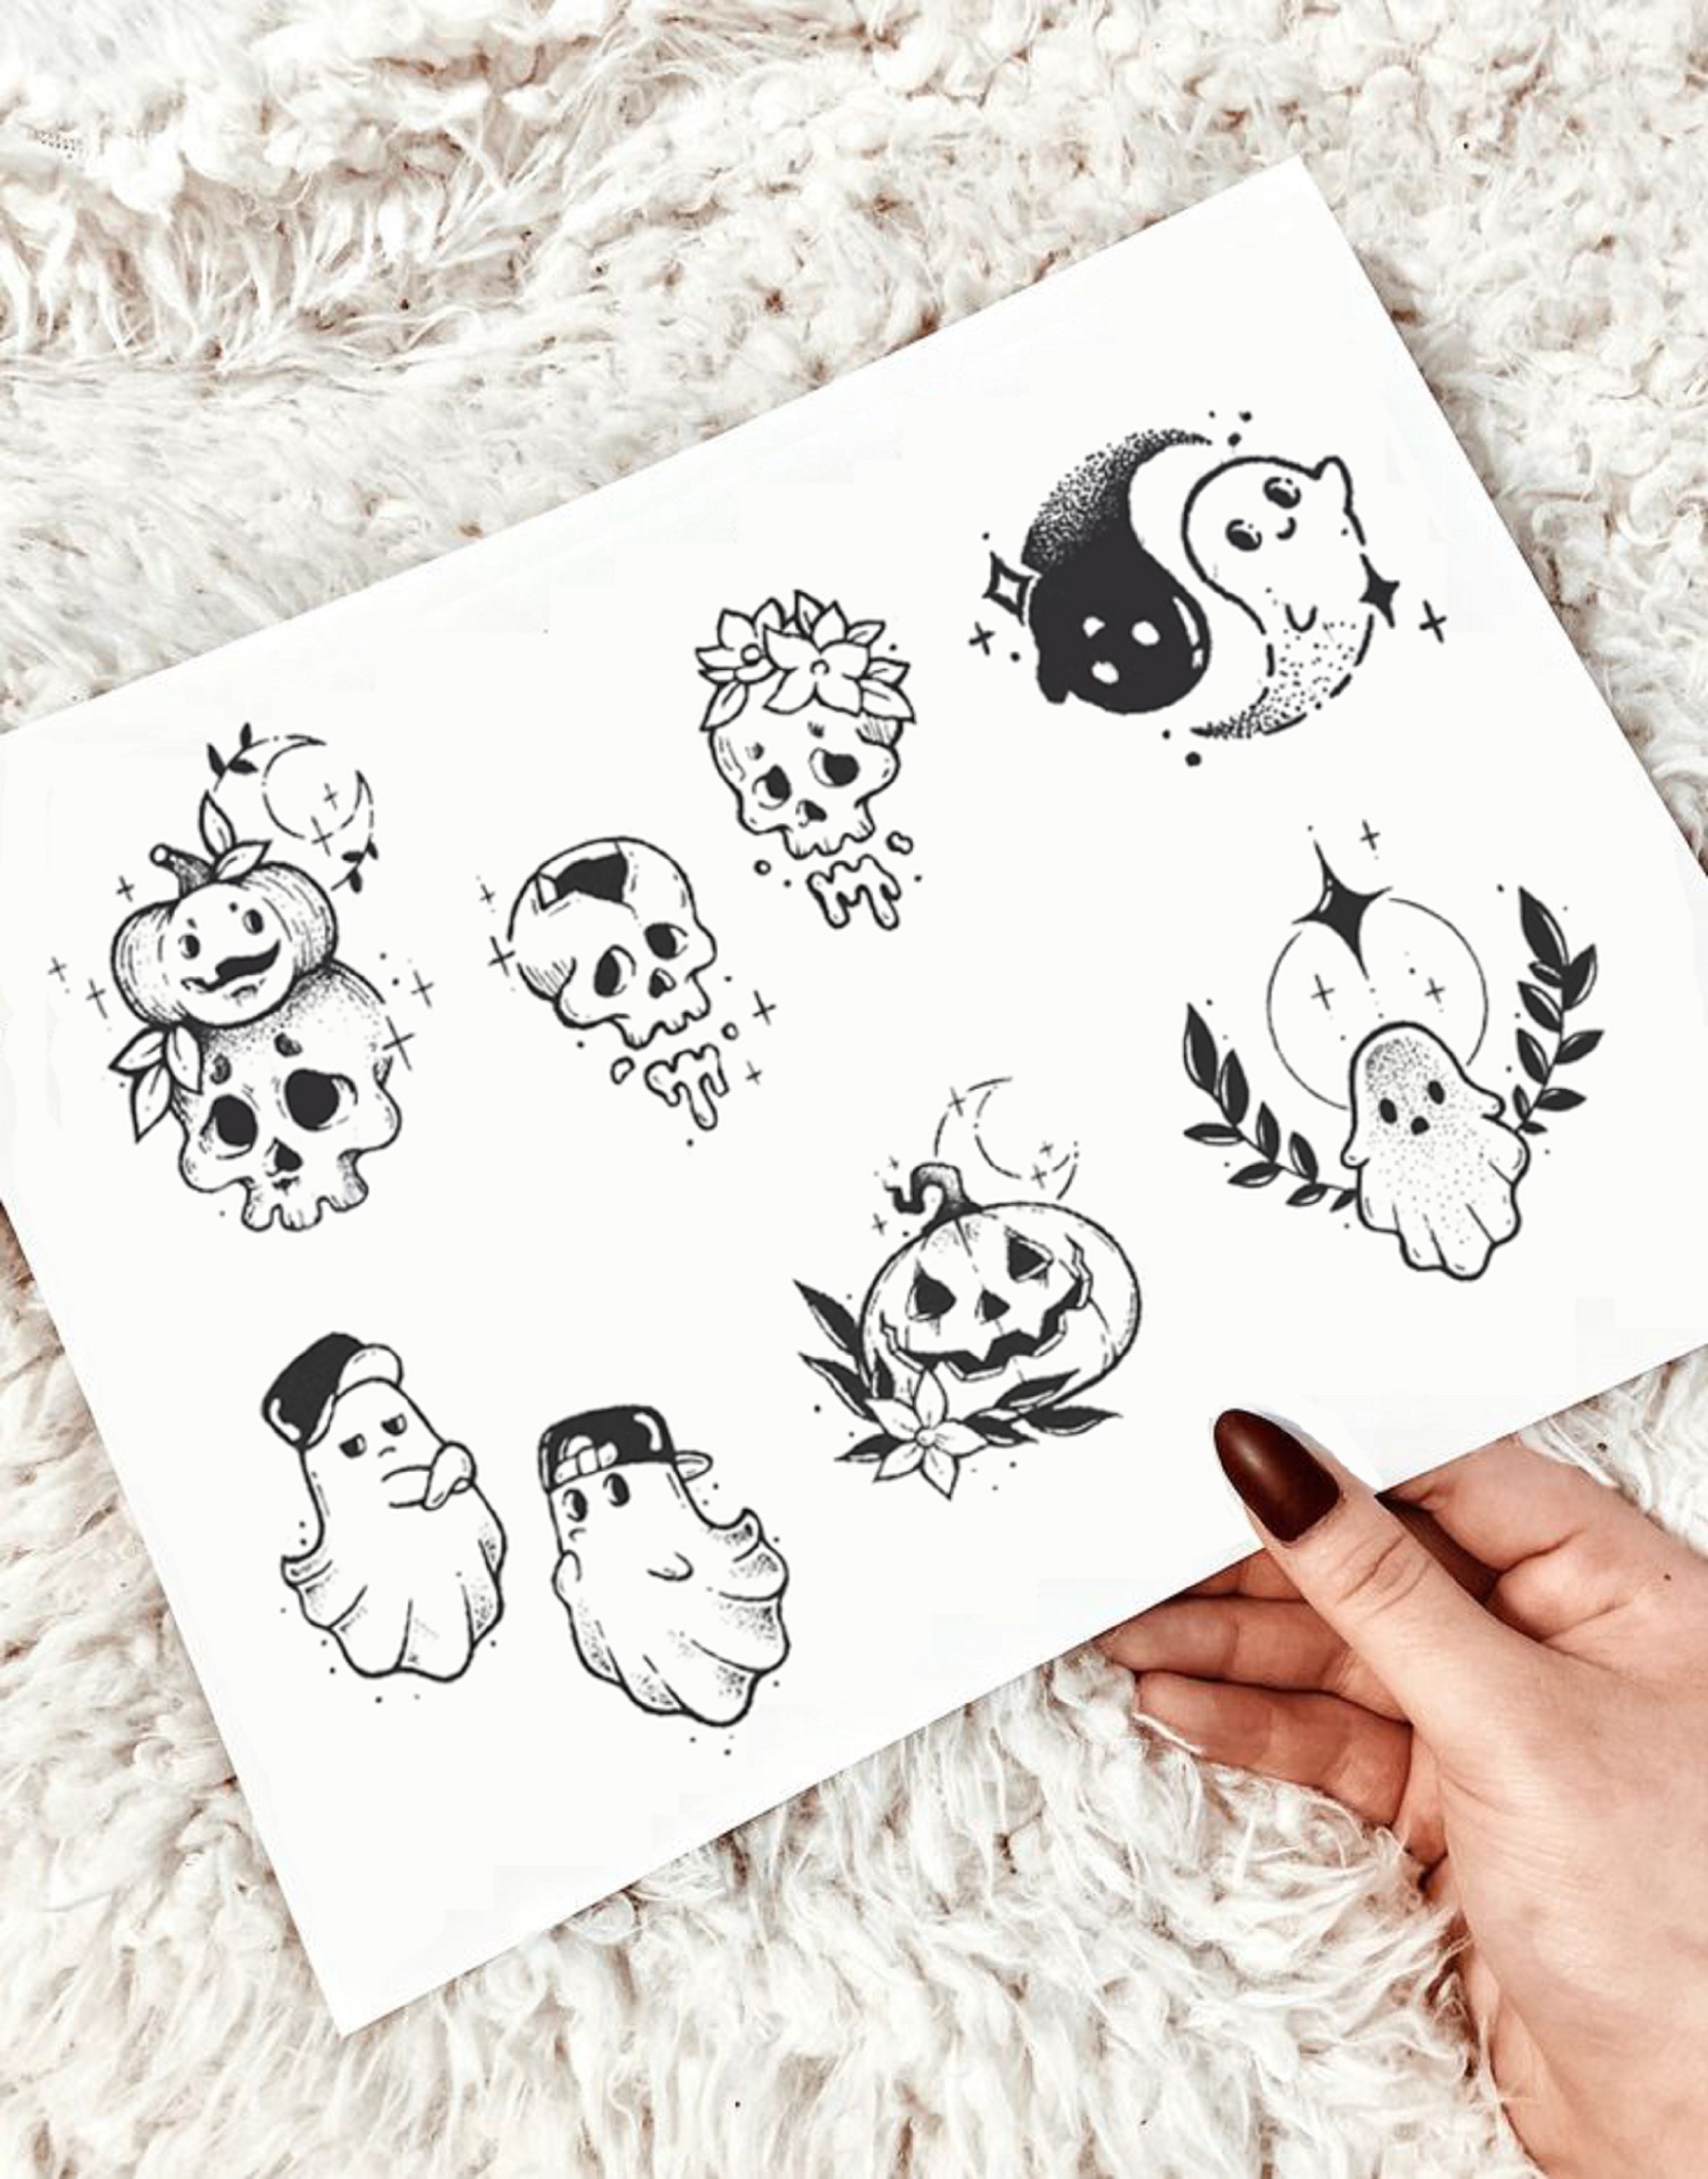 Ghost/Halloween Tattoo | Halloween tattoos, Ghost tattoo, Spooky tattoos